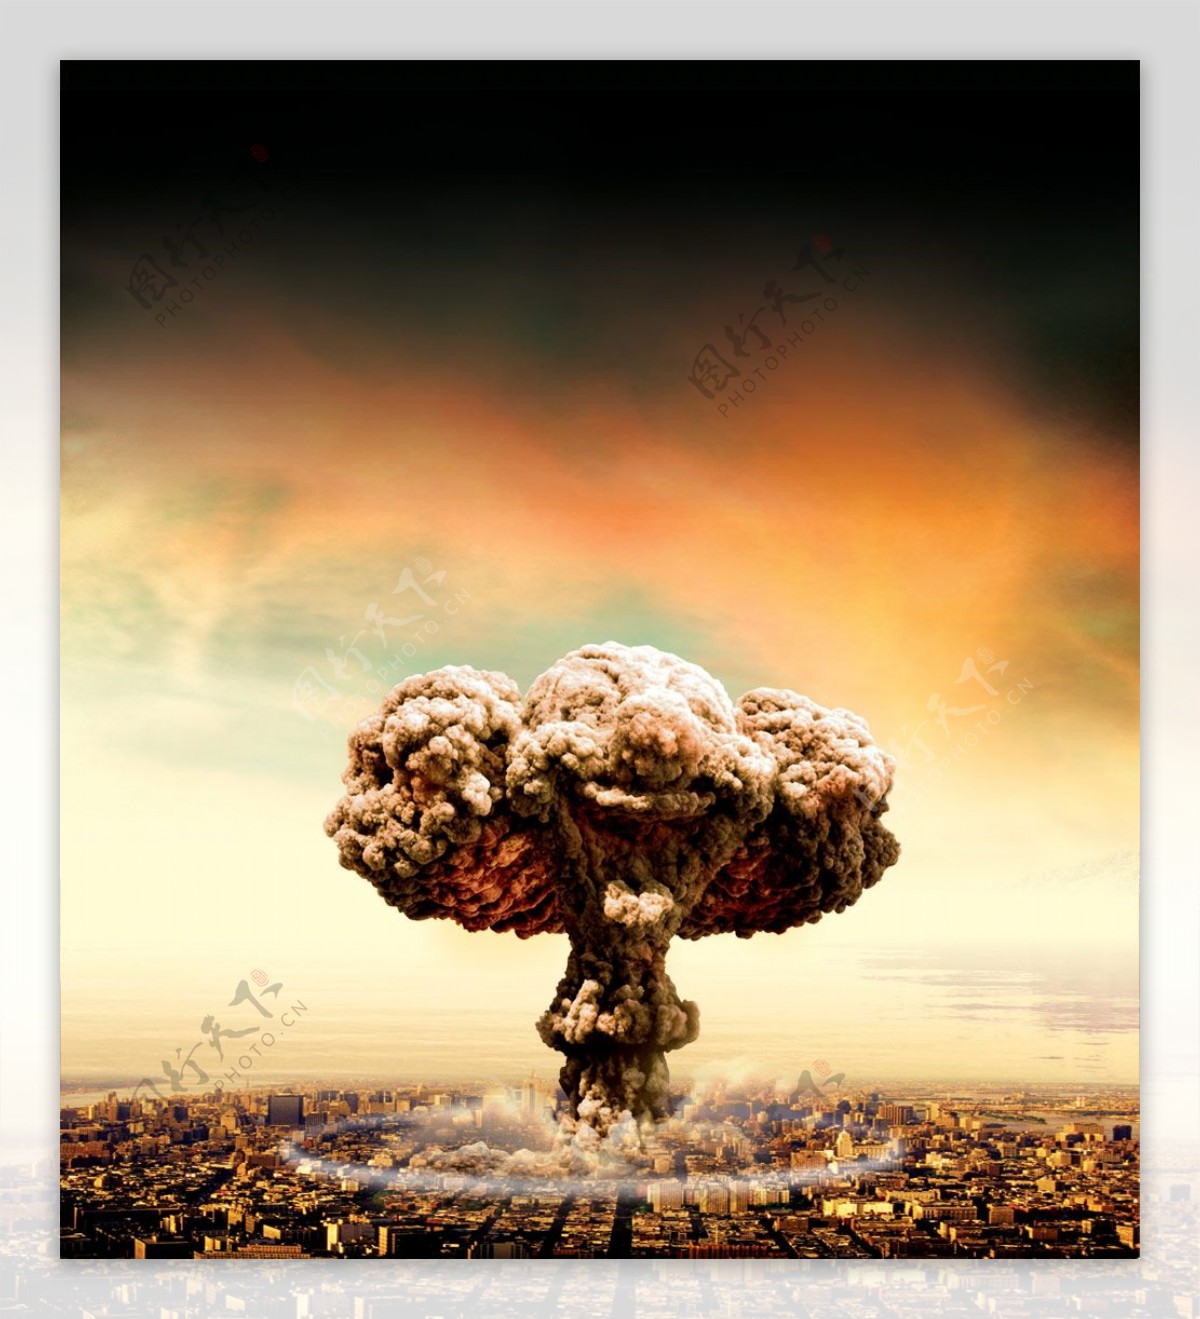 核弹爆炸蘑菇云psd